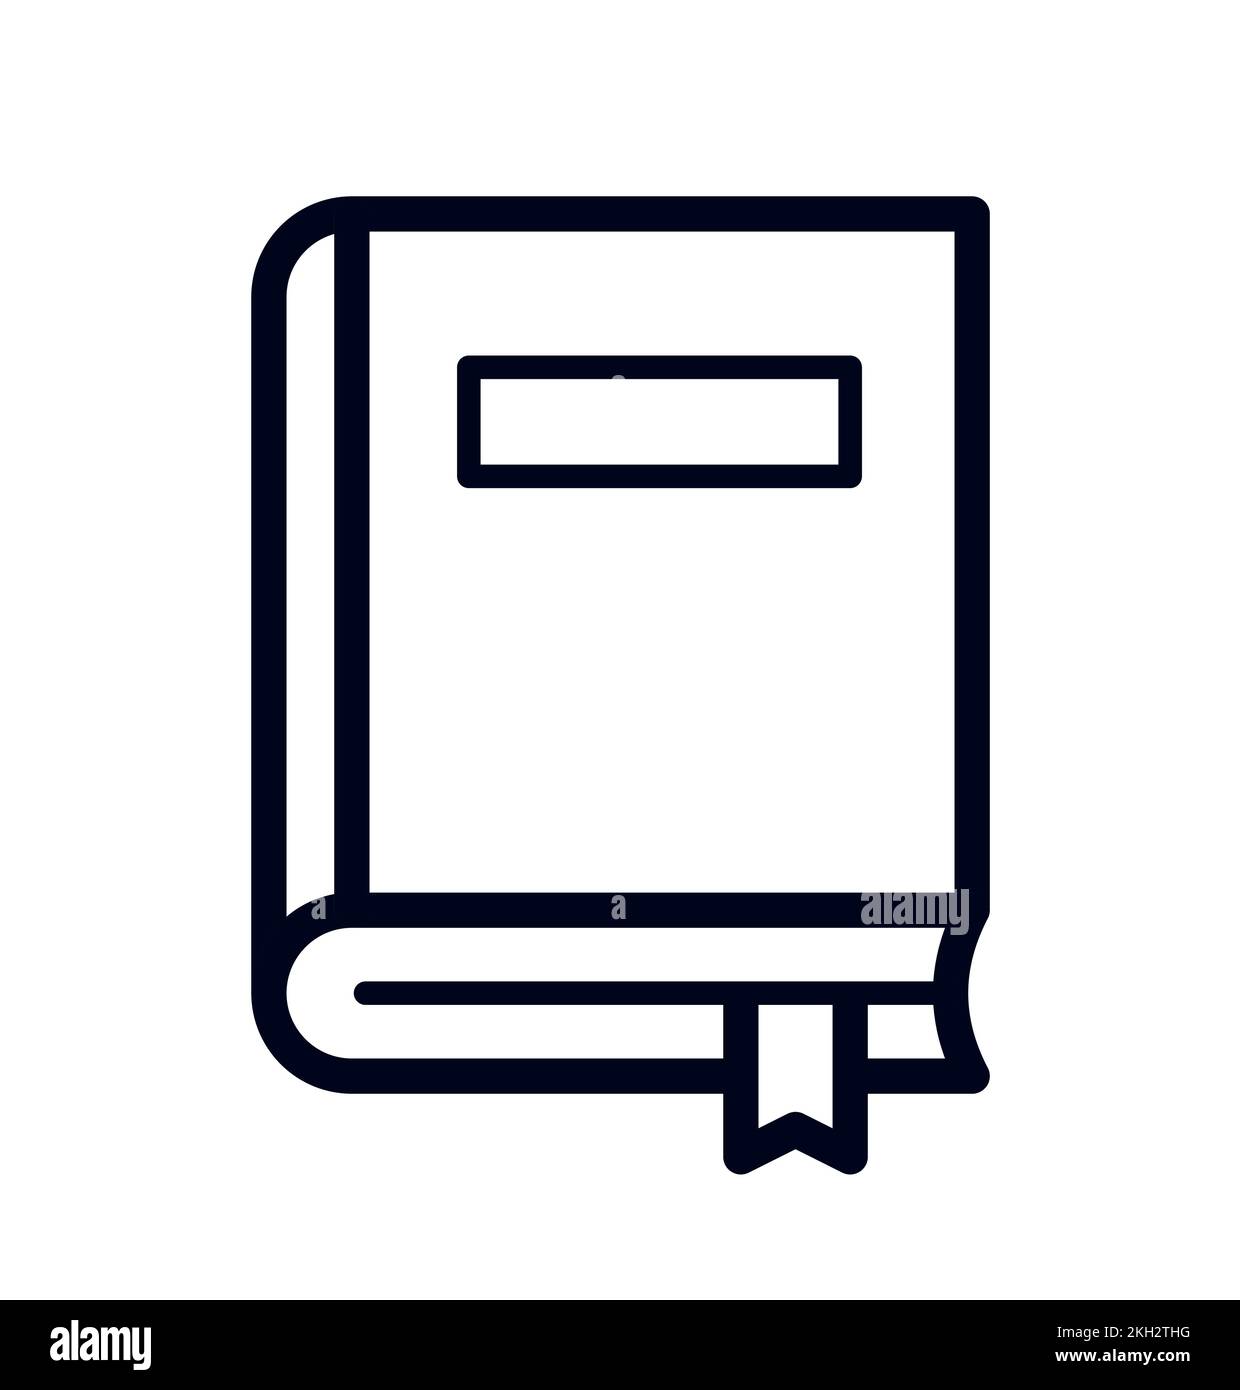 Simbolo di letteratura con icone di illustrazione vettoriale per libri o libri di testo Illustrazione Vettoriale